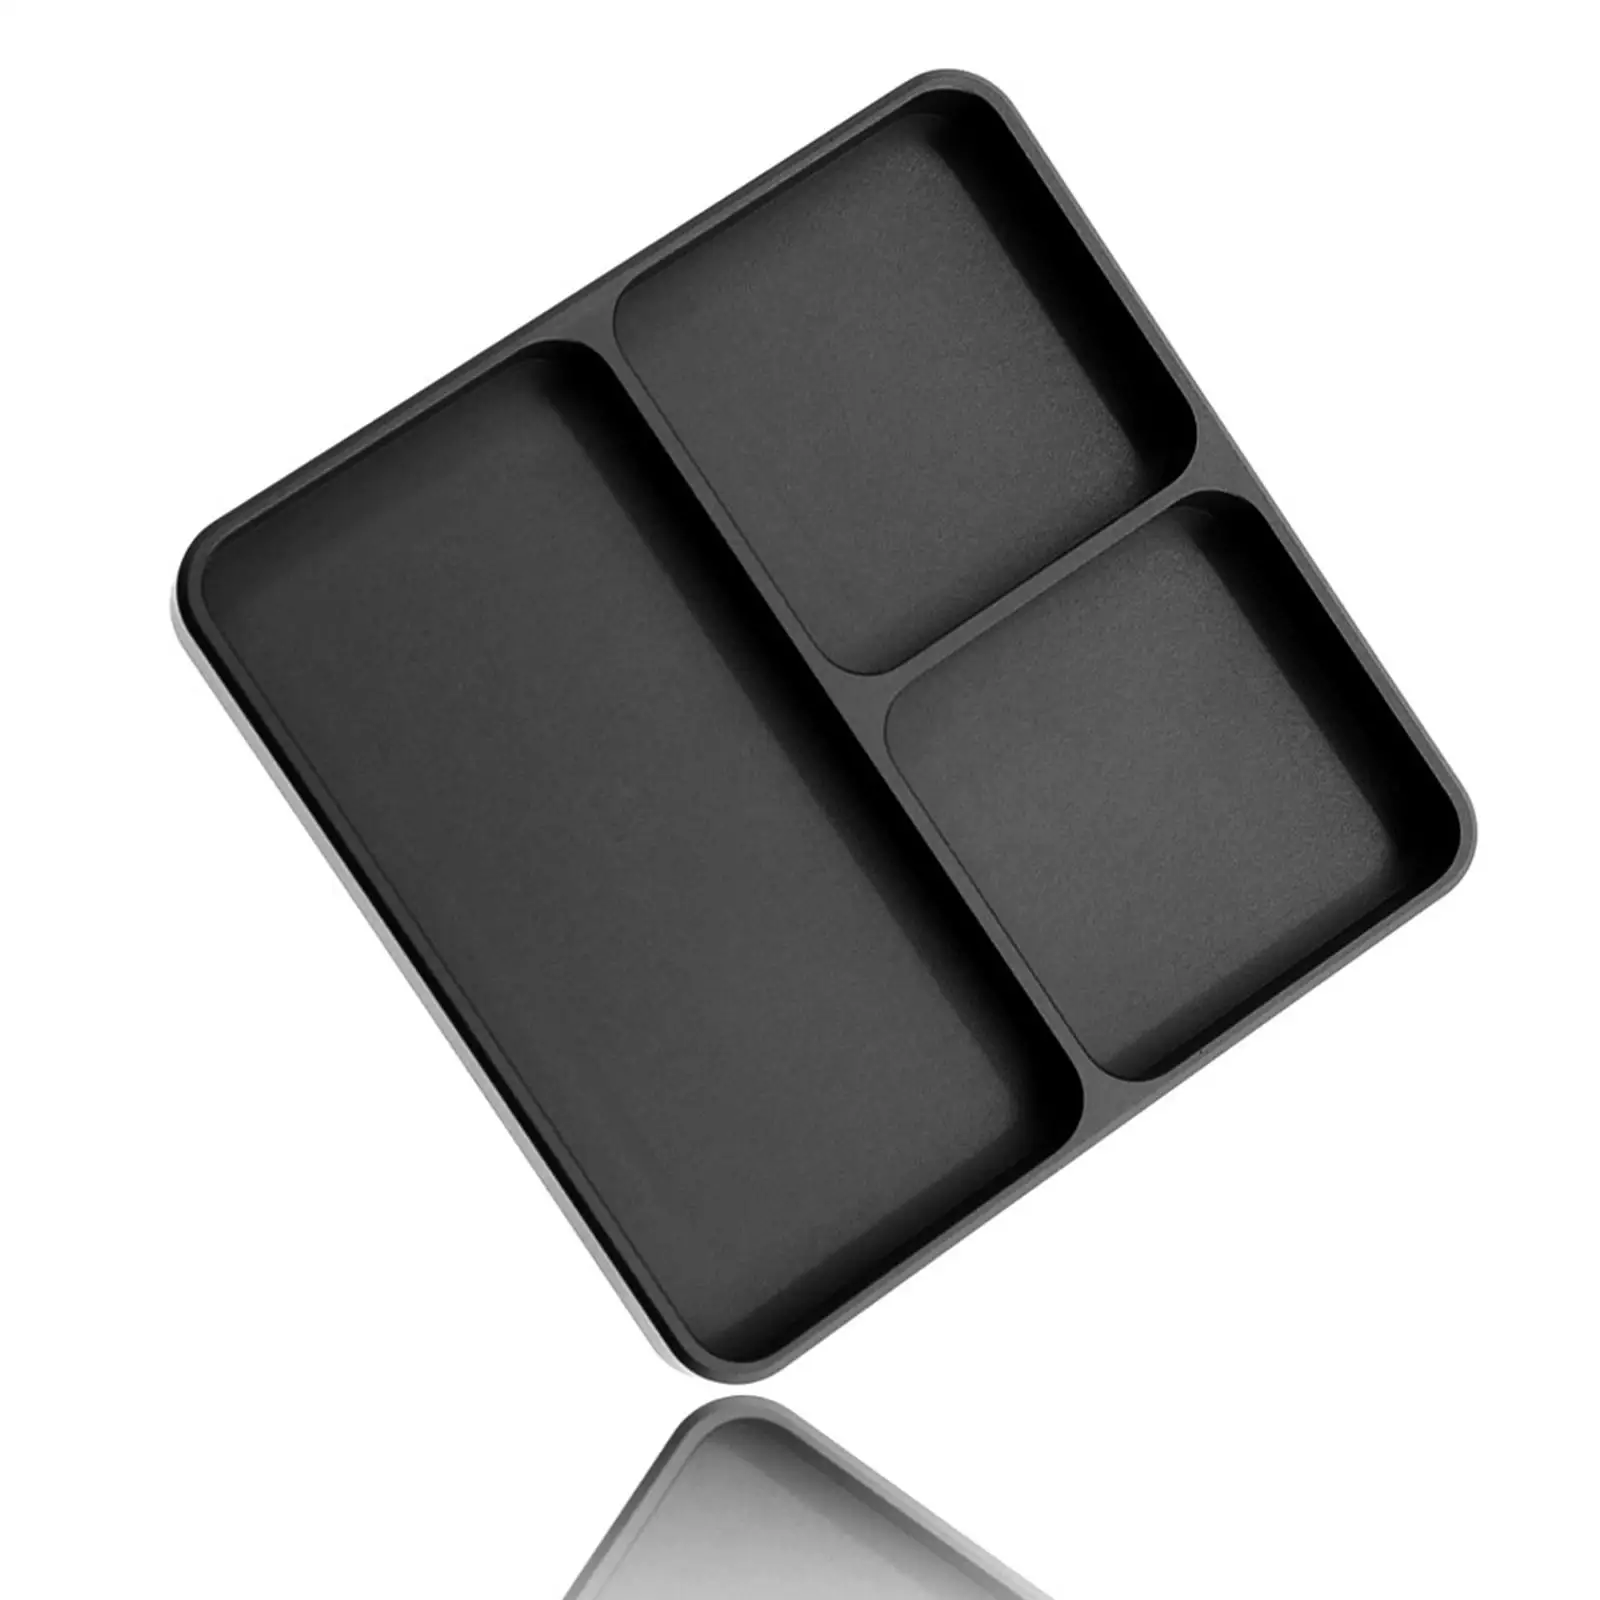  Screw Tray Aluminum Dish Bowl Bolt Nut Hardware Organizer  Mini Plate  RC Model Model Phone Repair